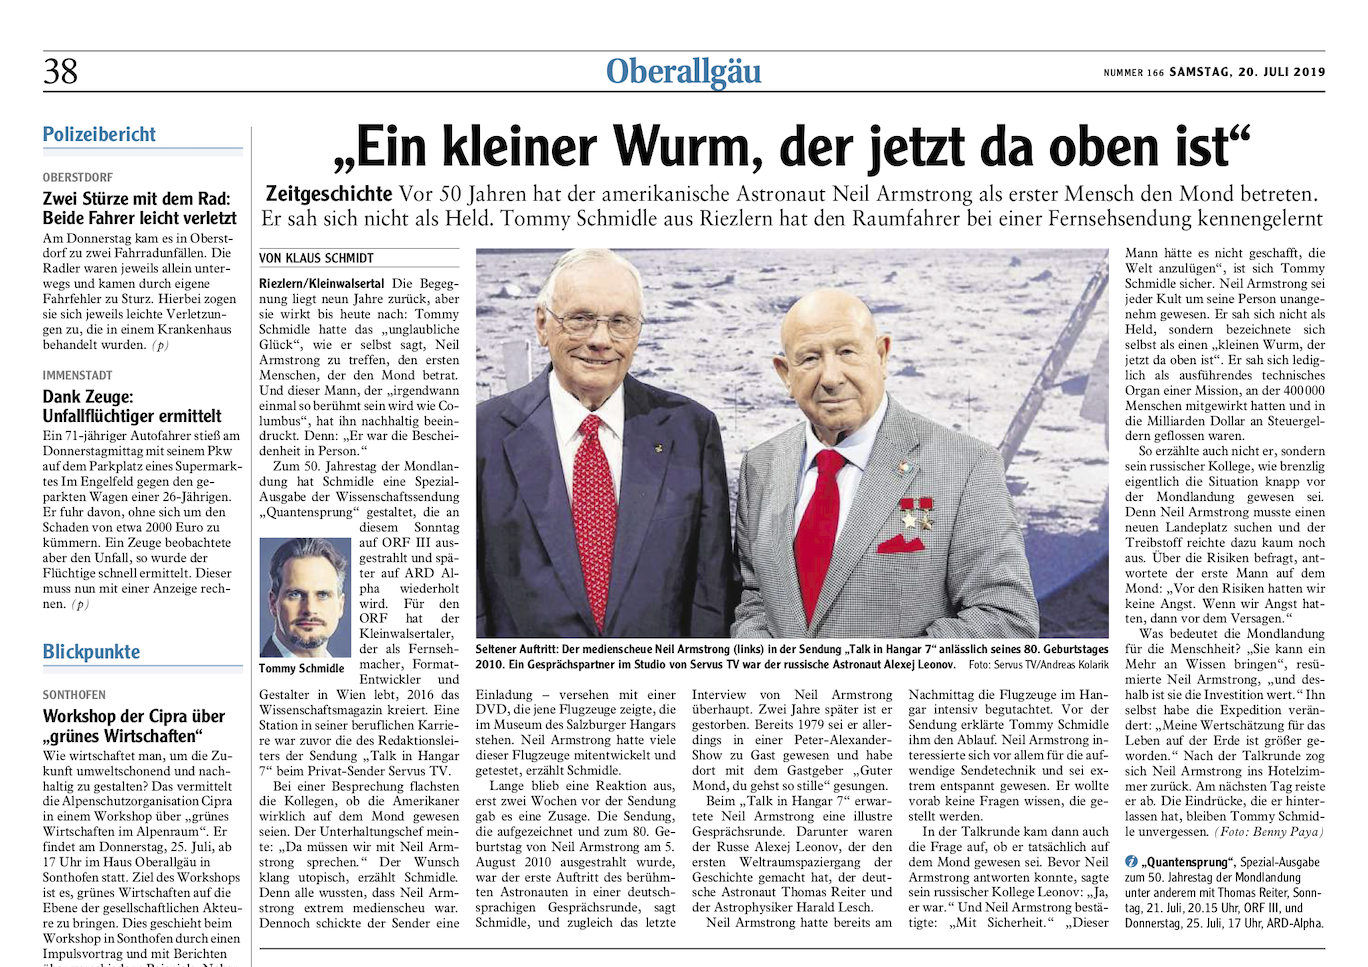 Artikel aus der Oberallgäu Zeitung zu 50 Jahre Mondlandung